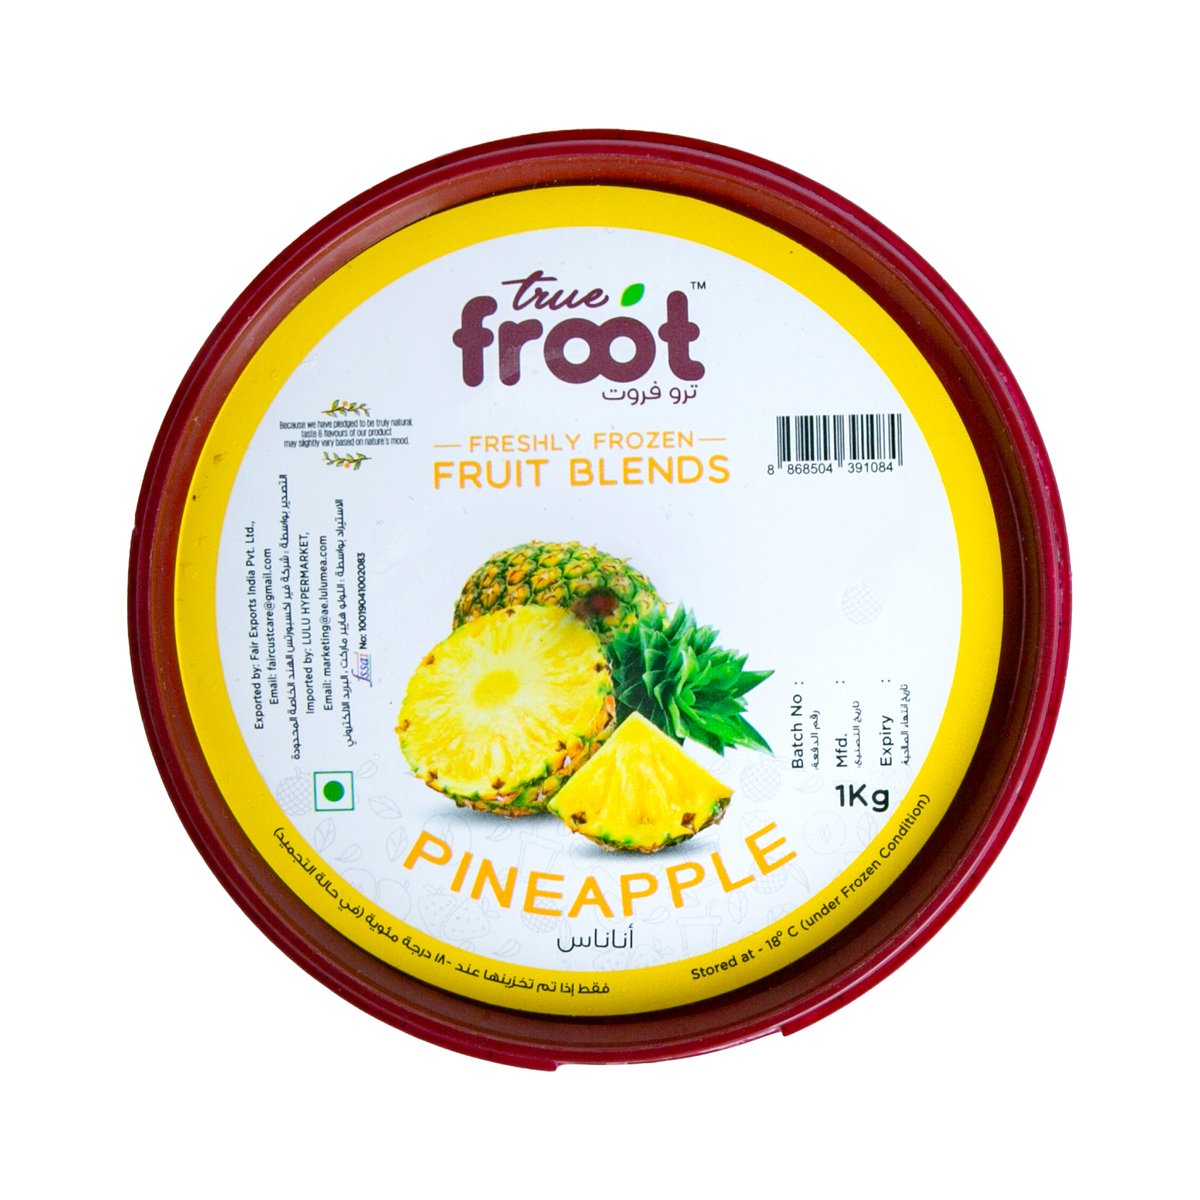 True Froot Freshly Frozen Pineapple Fruit Blend 1 kg